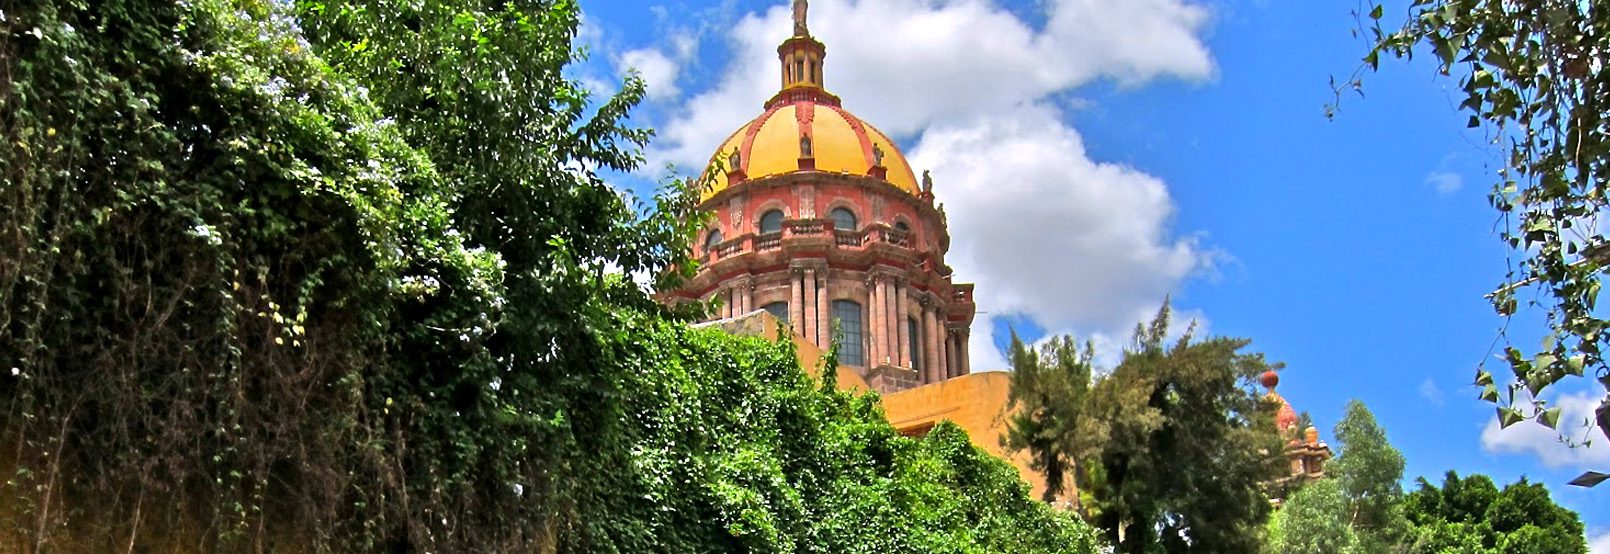 Homepage, San Miguel de Allende, Mexico